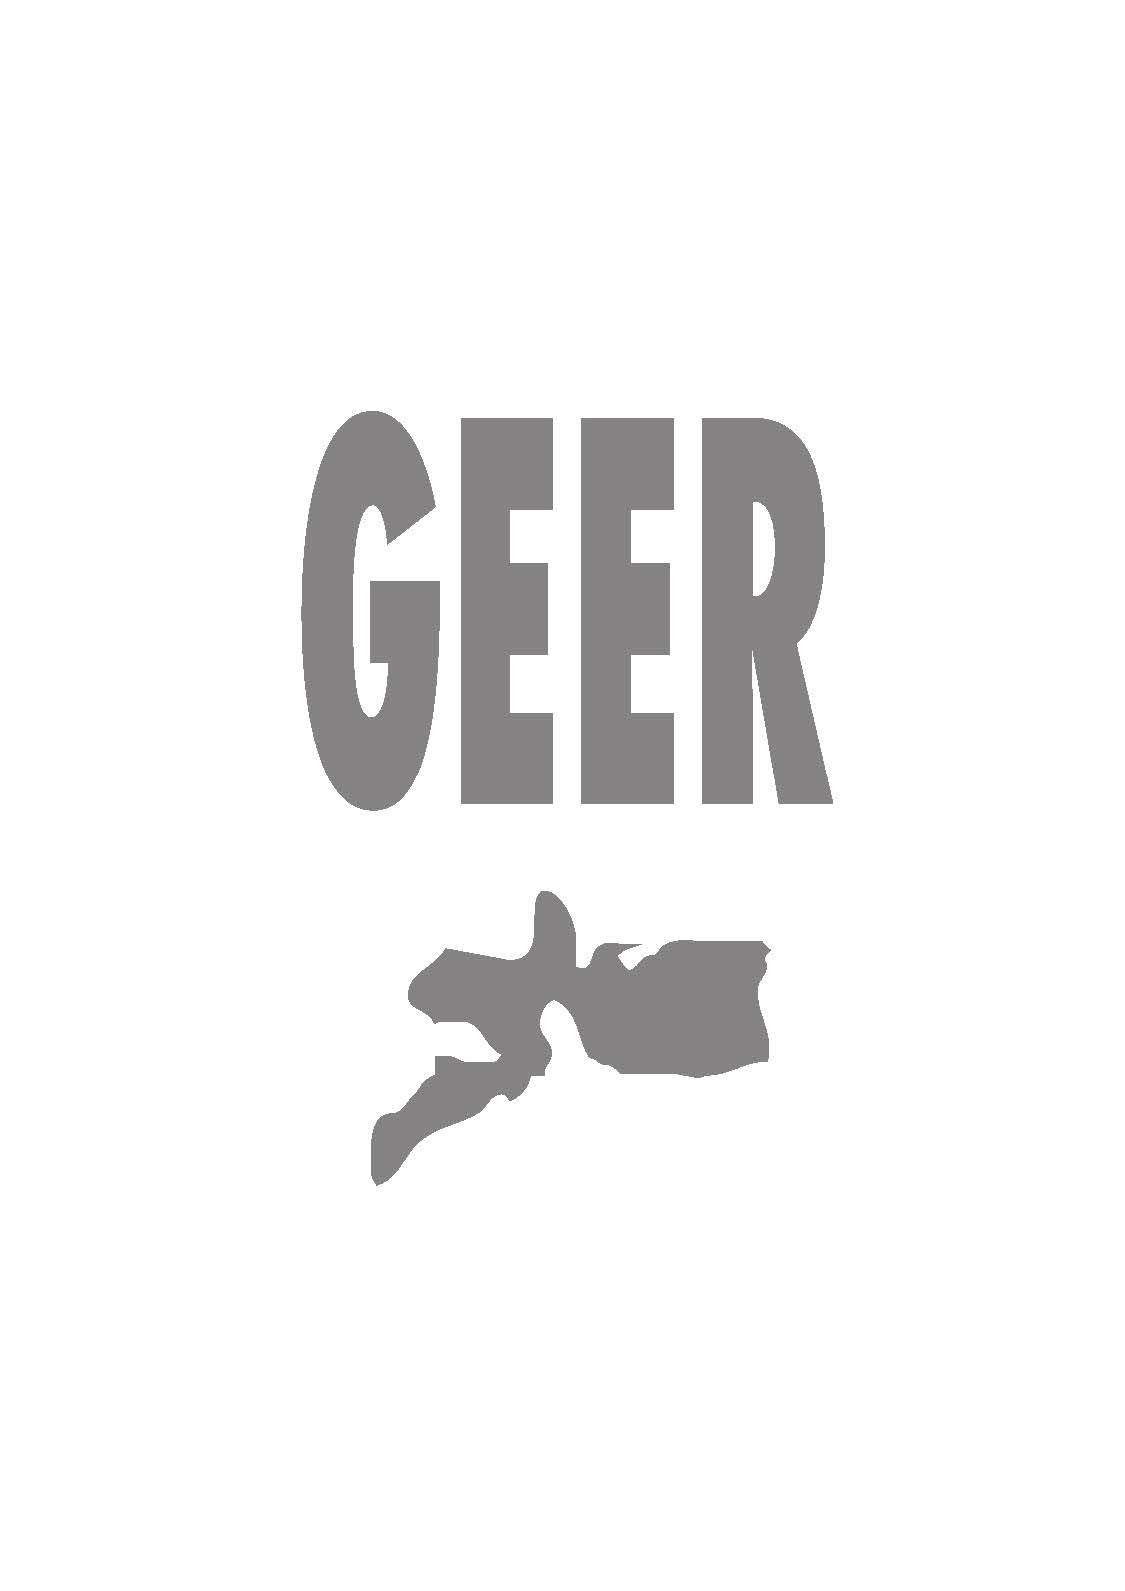 Geer Logo - GEER [Sociedad para el Estudio de las Enfermedades del Raquis]